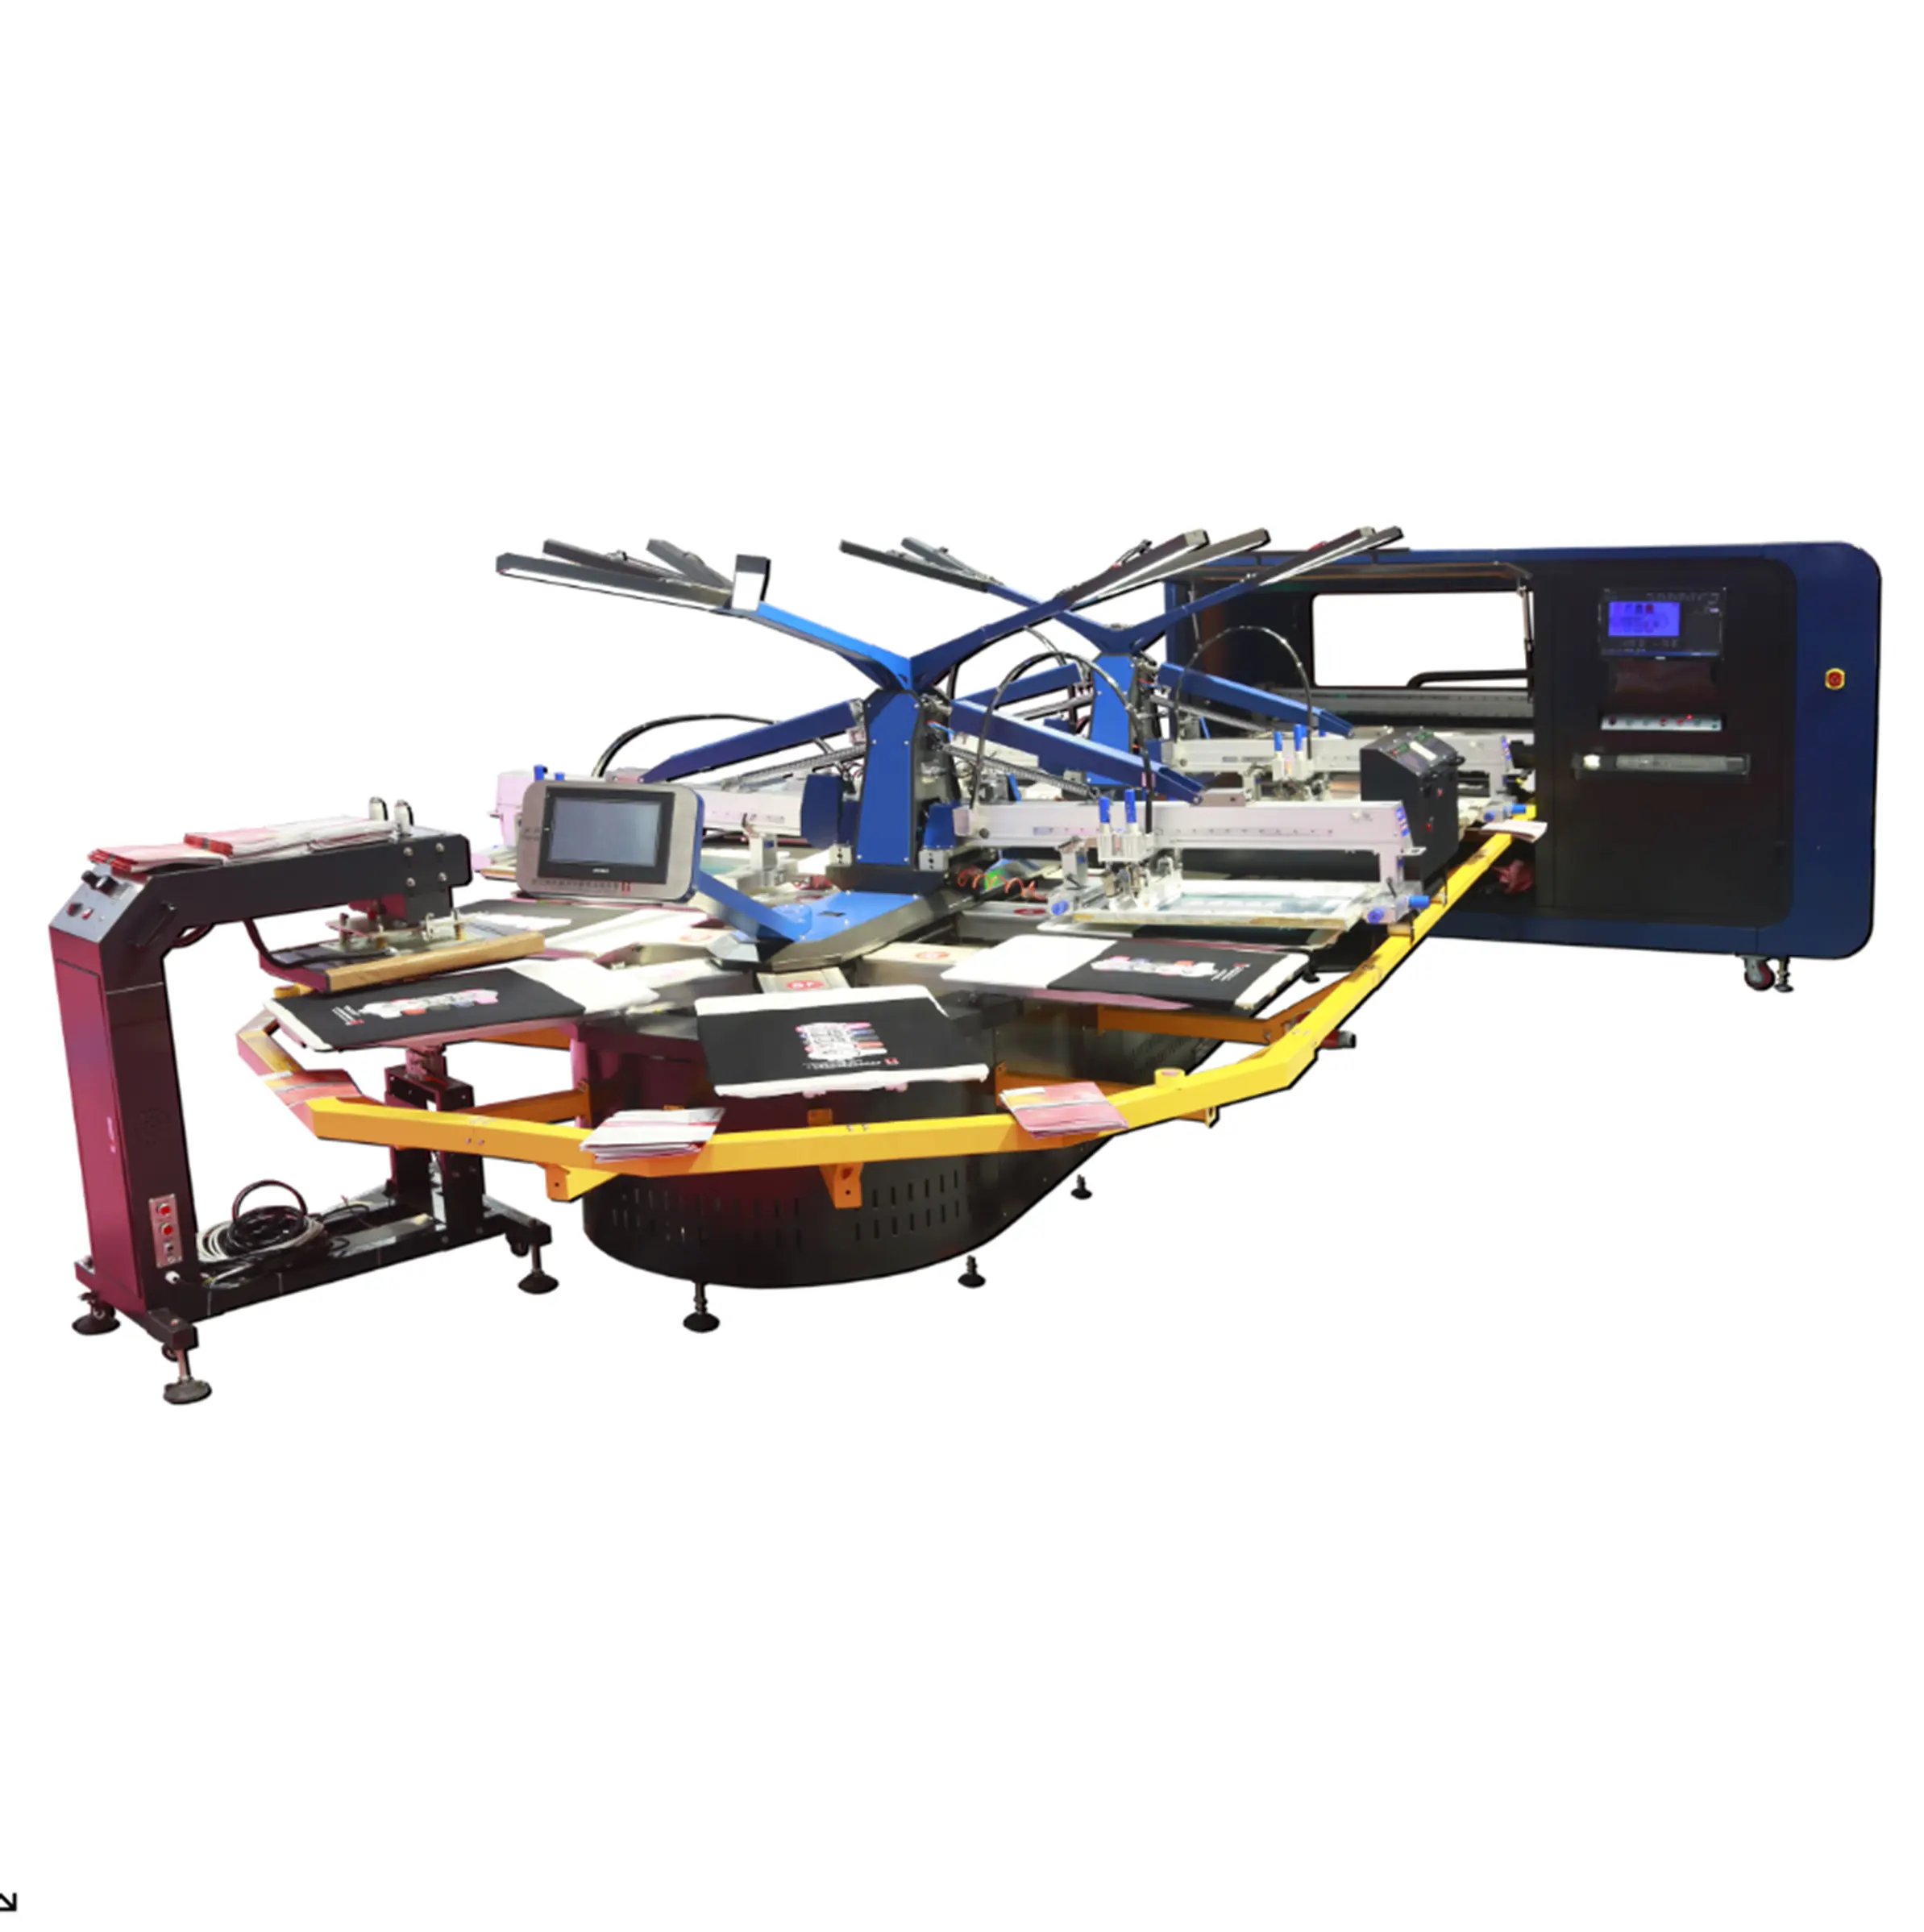 Estação de impressão de tela colorida, grande formato de 18 cores com impressora híbrida oval dtg para impressão 3d, fábrica de impressão têxtil